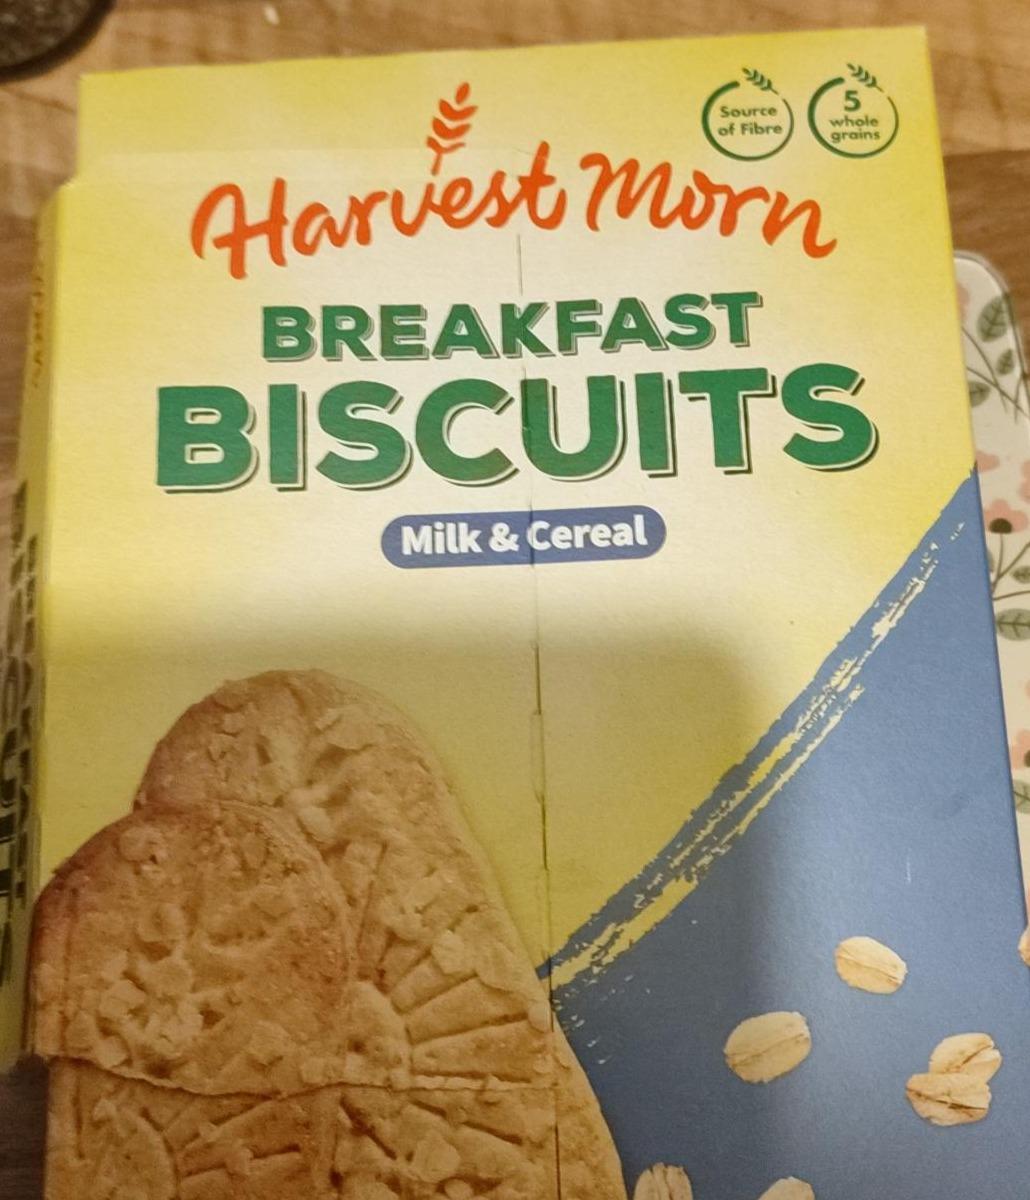 Fotografie - Breakfast Biscuits Milk & Cereal Harvest Morn